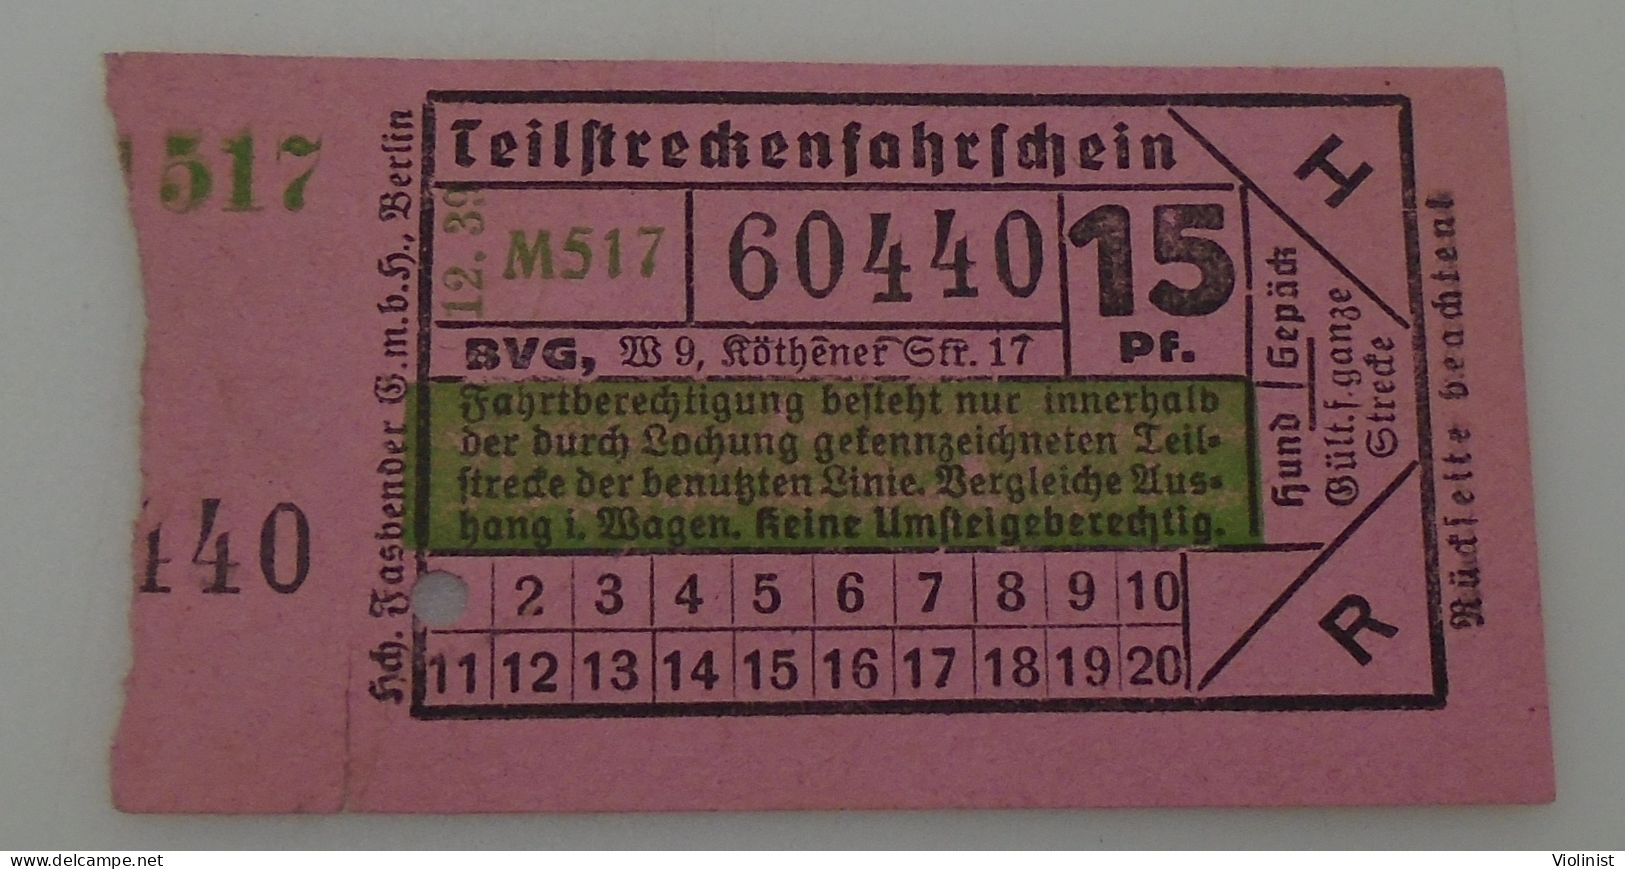 Germany-G.m.b.h.Berlin-Teilstreckenfahrschein-Berlin Old Ticket For Tram Transport-12.39. - Europe